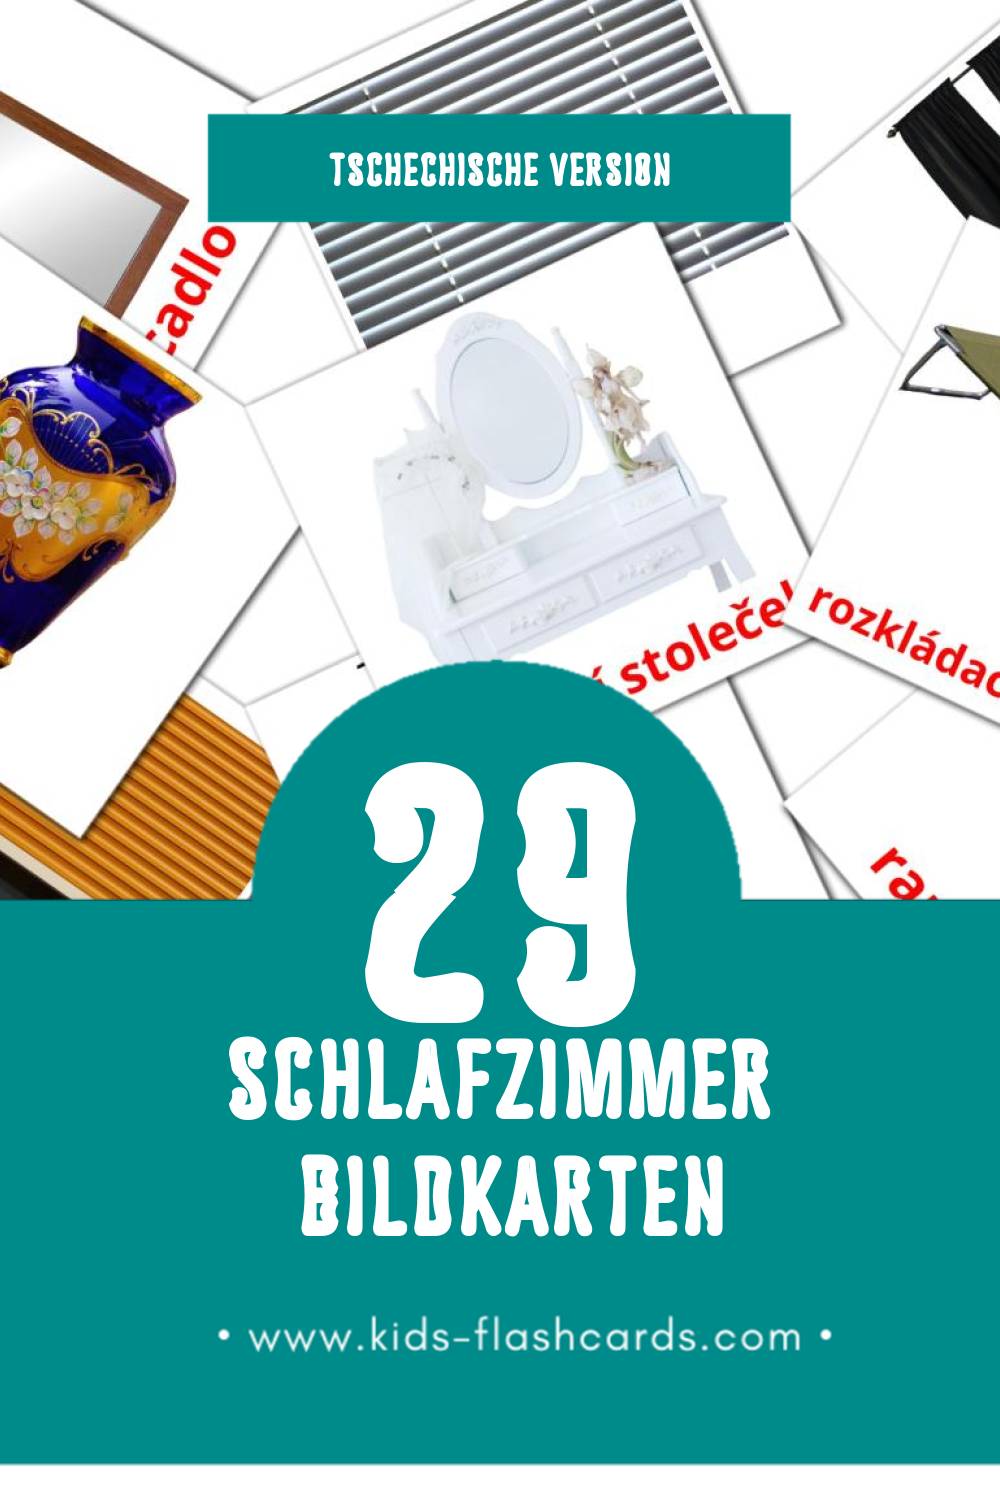 Visual Ložnicel Flashcards für Kleinkinder (33 Karten in Tschechisch)